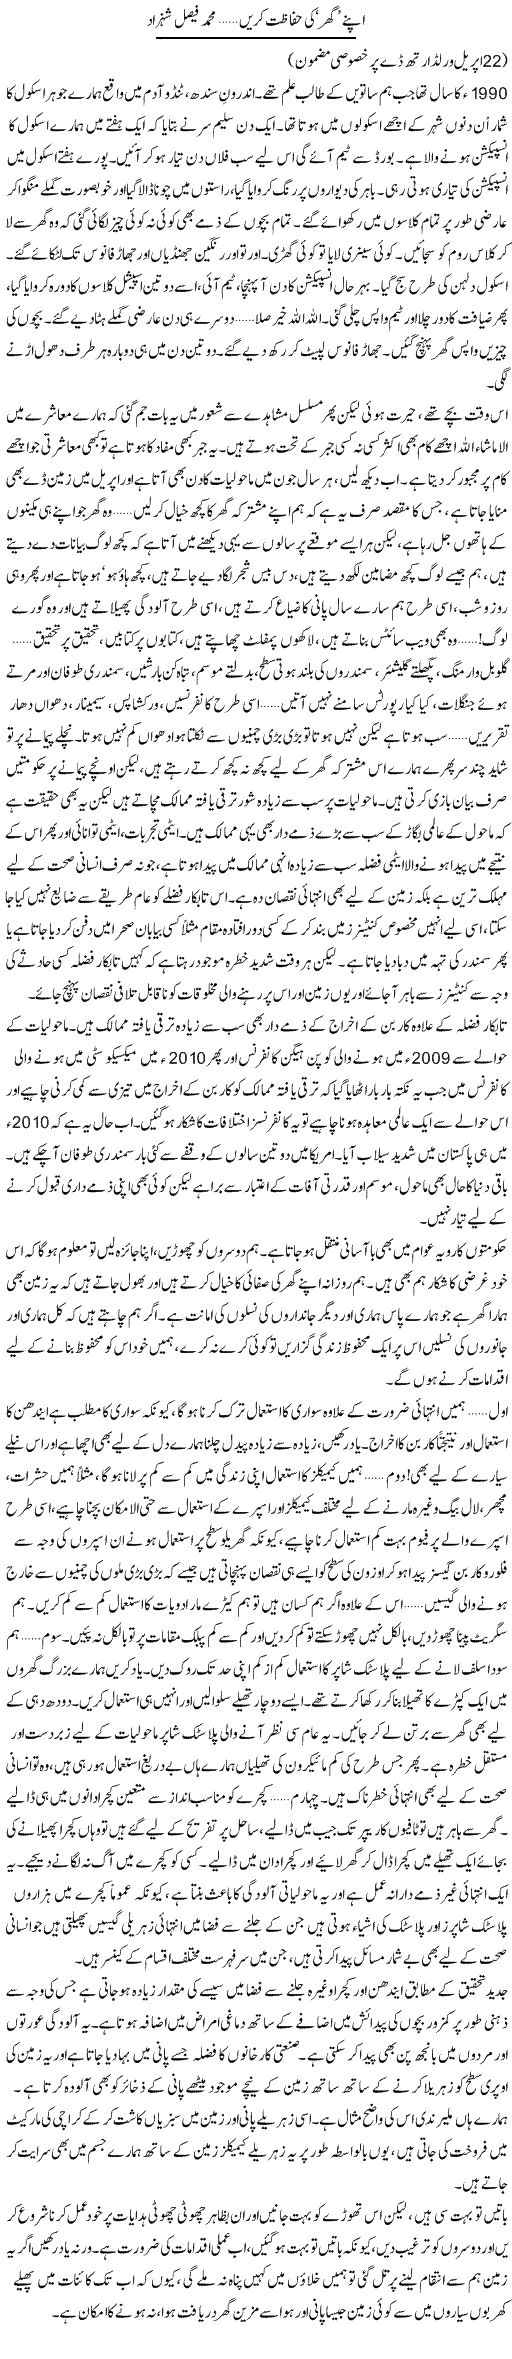 Apne Ghar Ki Hifazat Karain | Muhammad Faisal Shehzad | Daily Urdu Columns